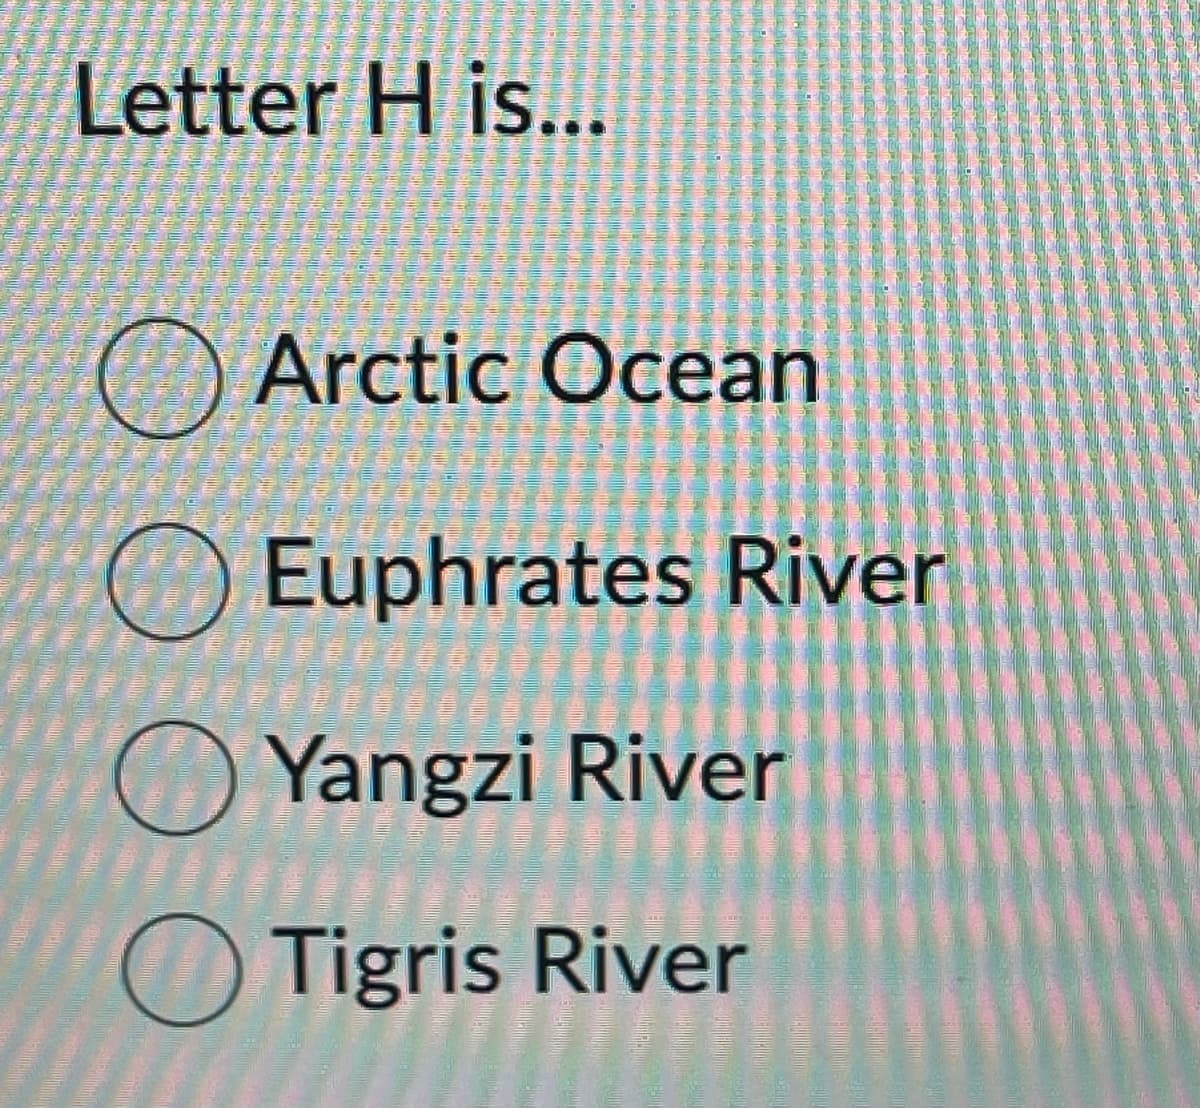 Letter H is...
Arctic Ocean
Euphrates River
Yangzi River
Tigris River
H